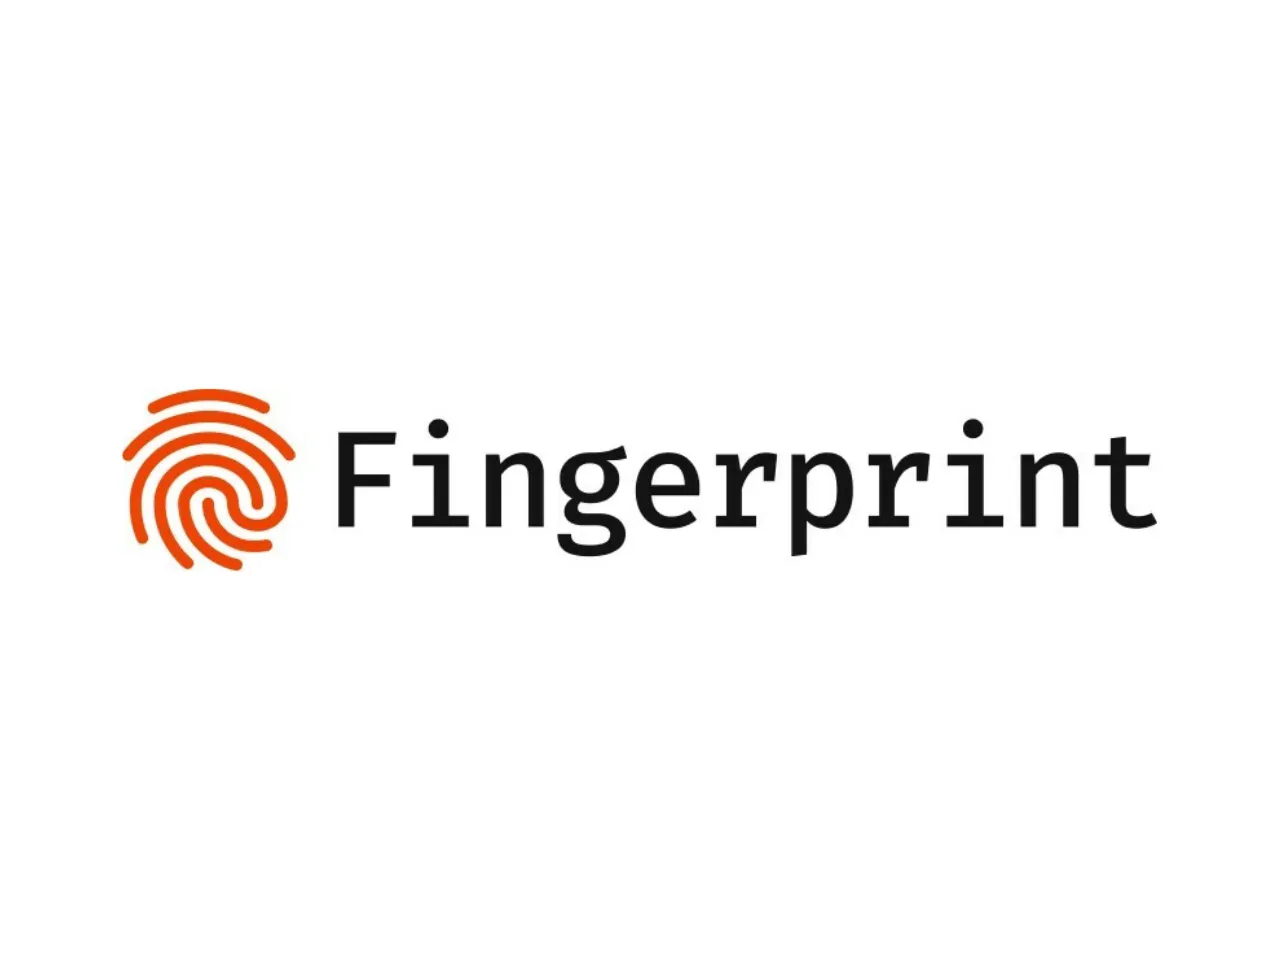 finger print logo